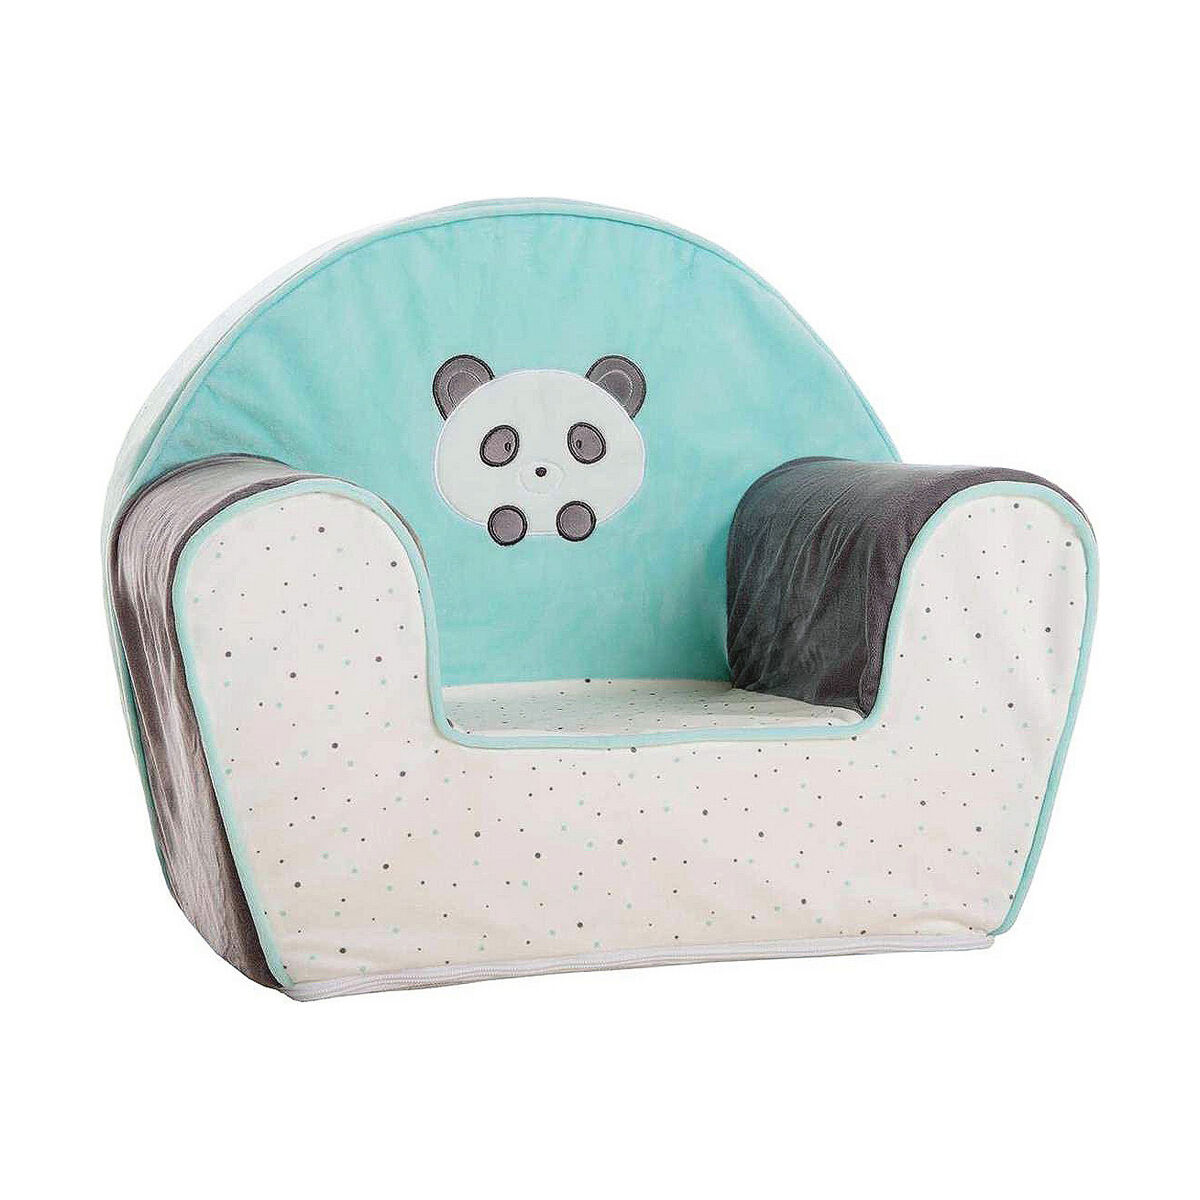 Asientos y sofá para bebé - Envío Gratis*